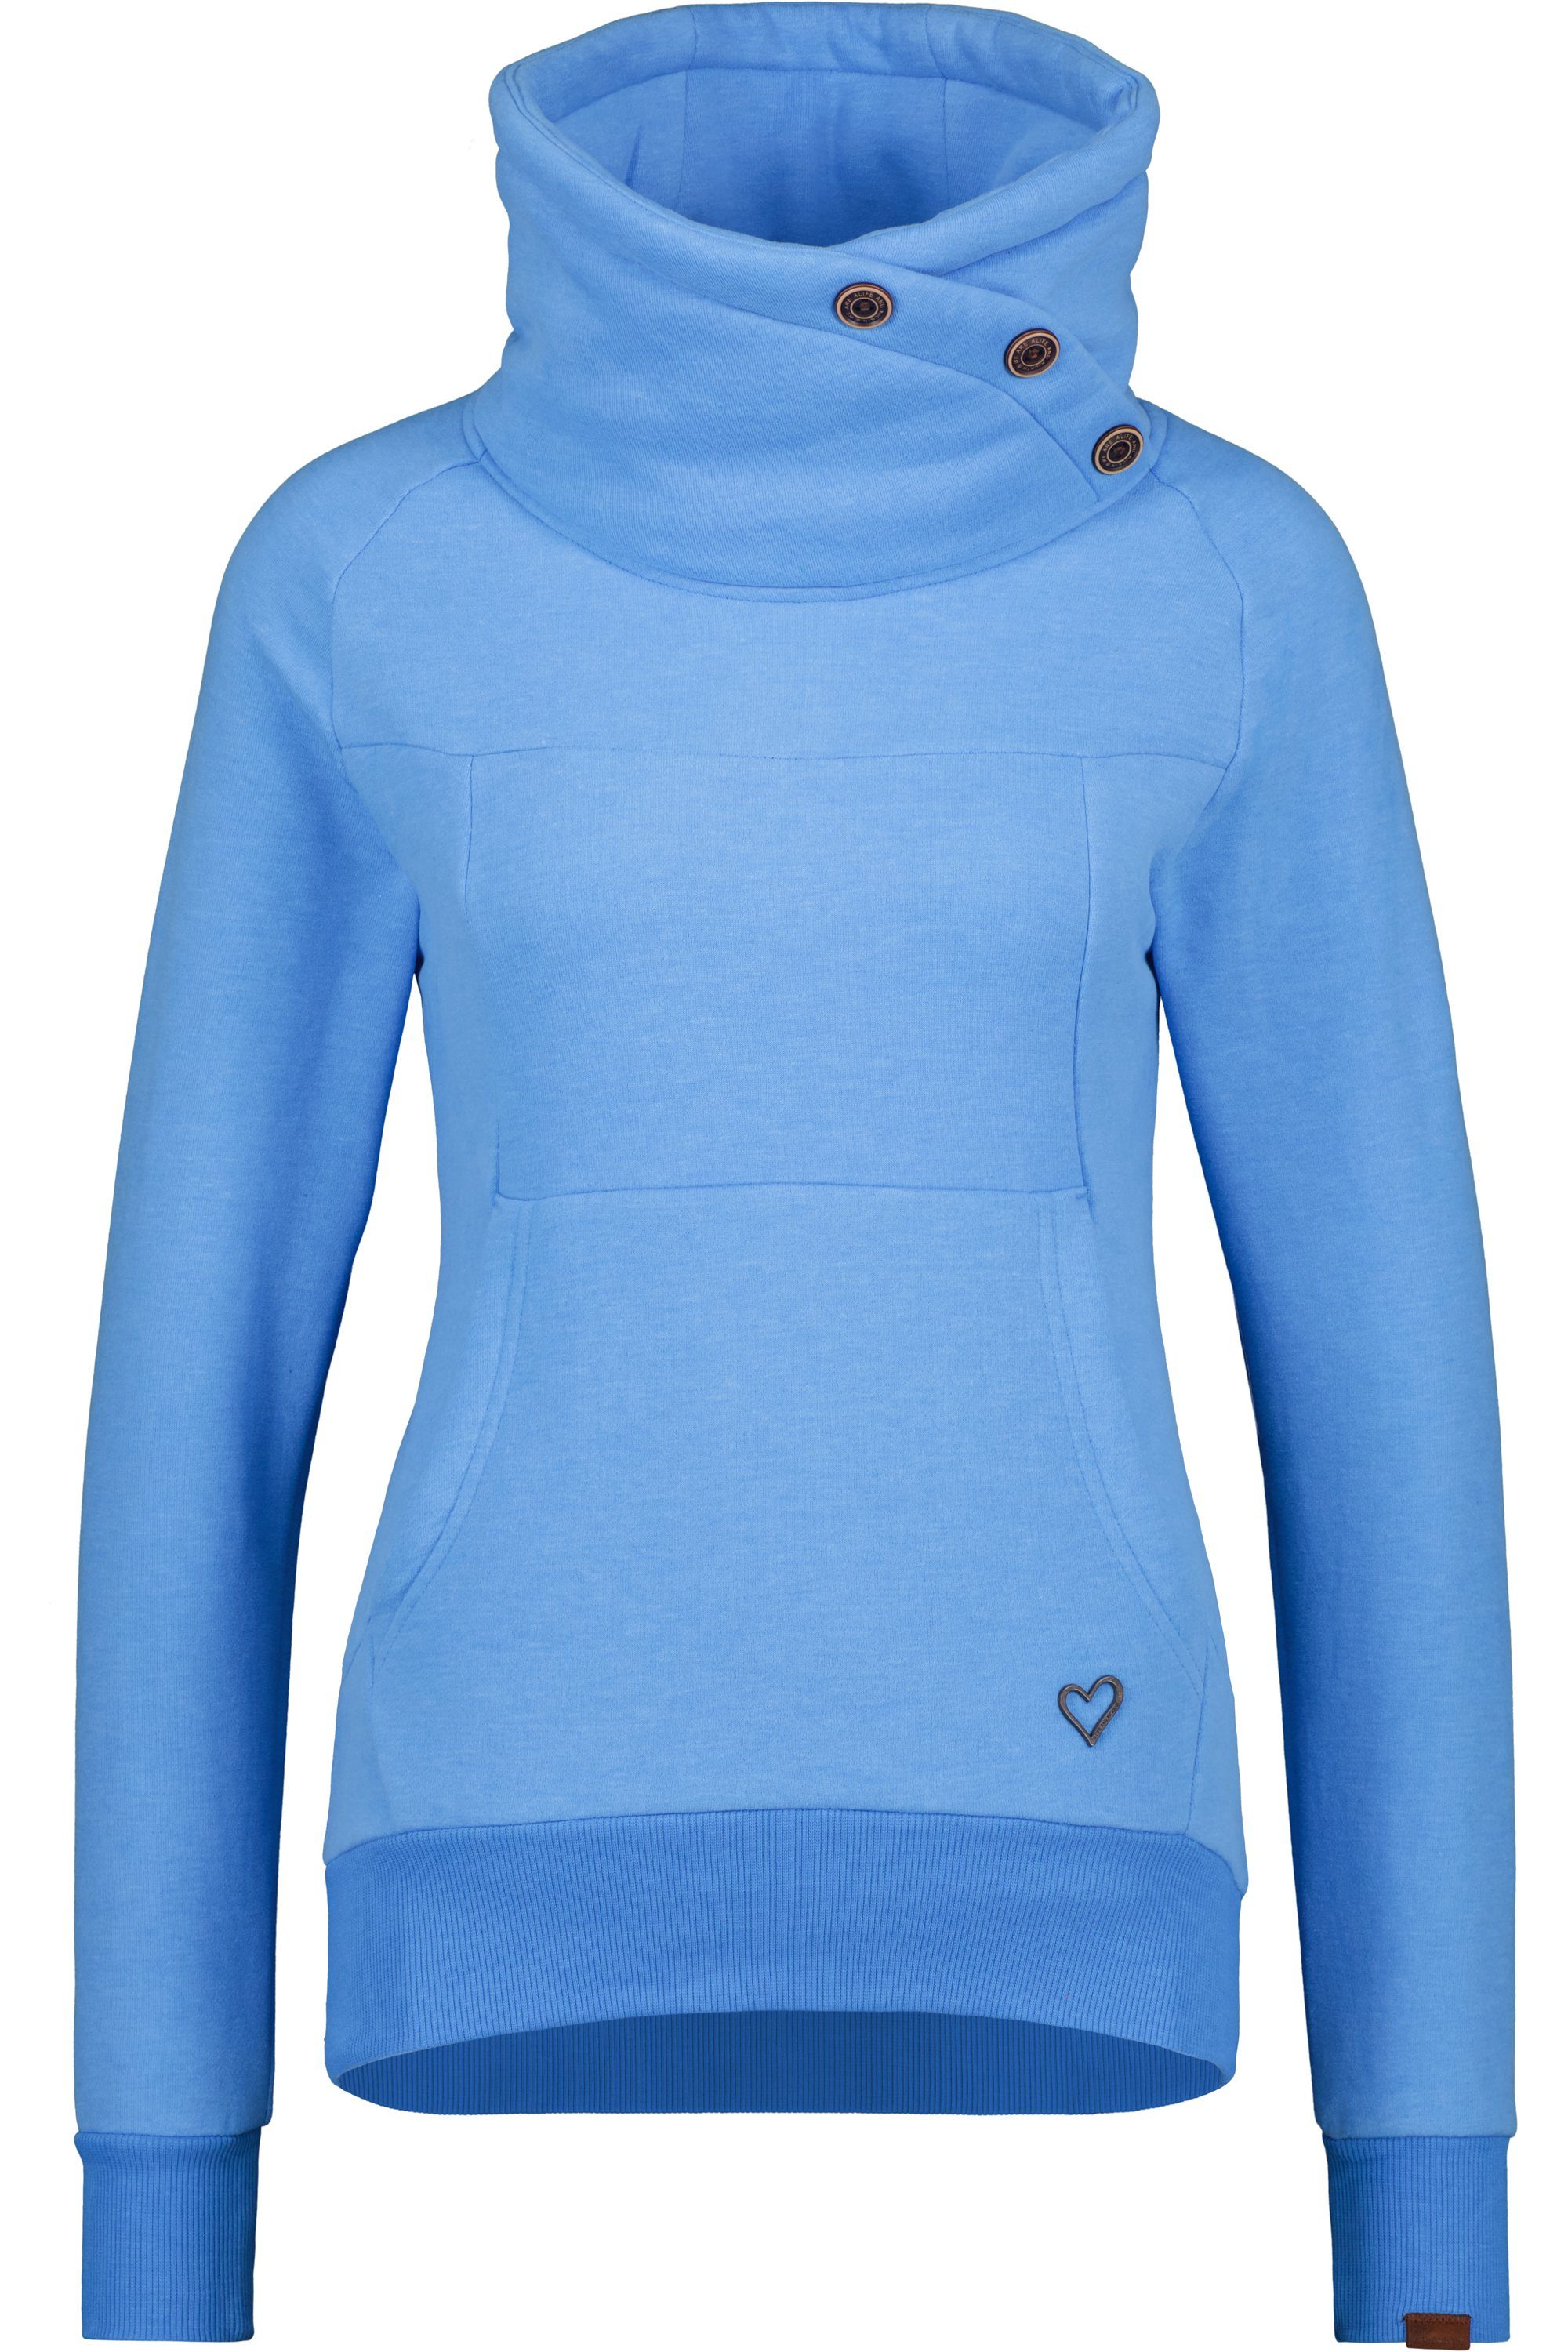 Kickin Damen melange Sweatshirt A VioletAK Alife azure Pullover & Sweatshirt Rundhalspullover,